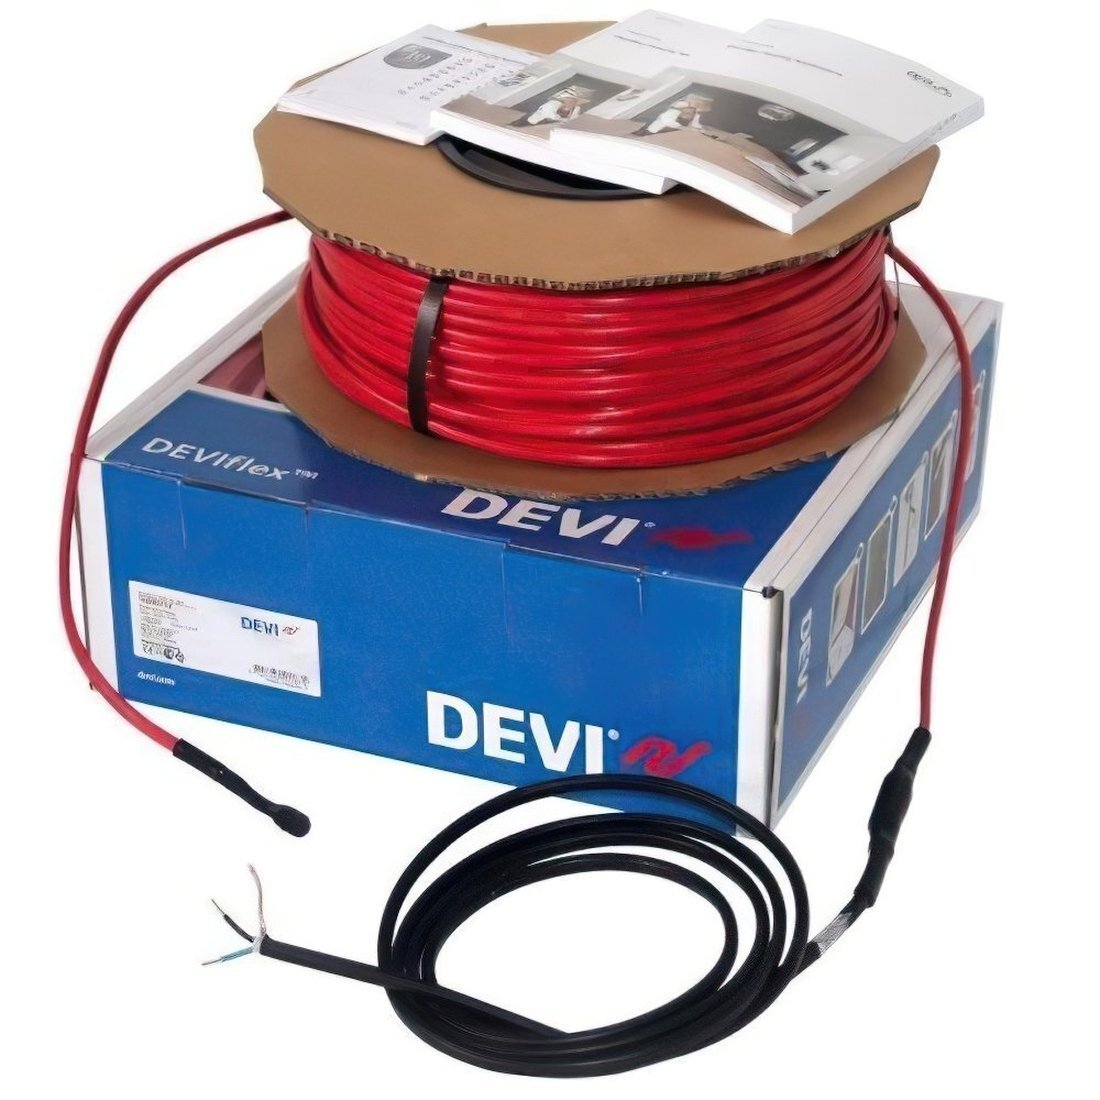 Теплый пол DEVI Flex двухжильный нагревательный кабель 18T, 1340 Вт, 230V, 74м (140F1246) фото 